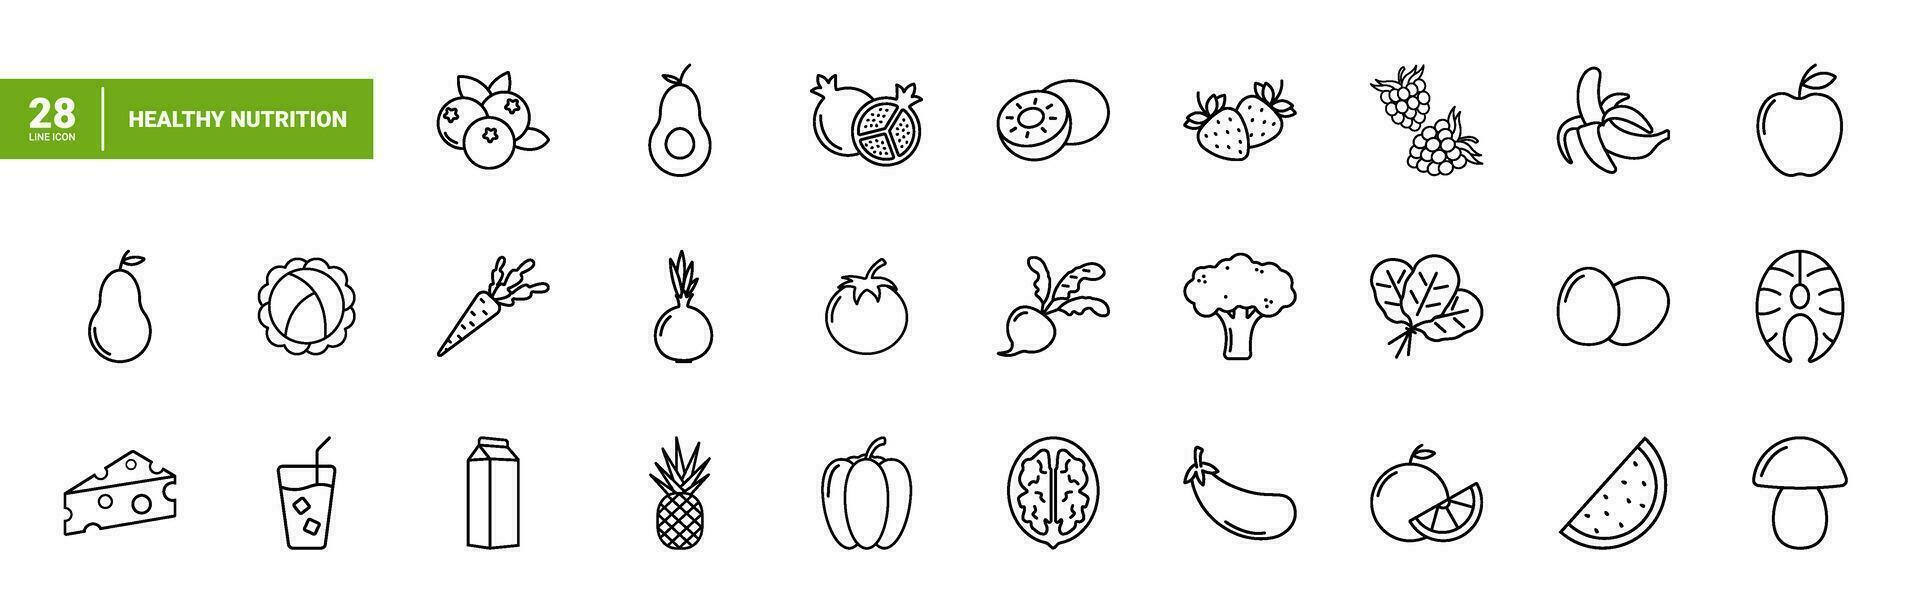 conjunto do simples linear Preto ícones saudável Comida e apropriado nutrição. coleção do ícones com vegetais, frutas, e apropriado Comida para rede, aplicativo, e imprimir. vetor